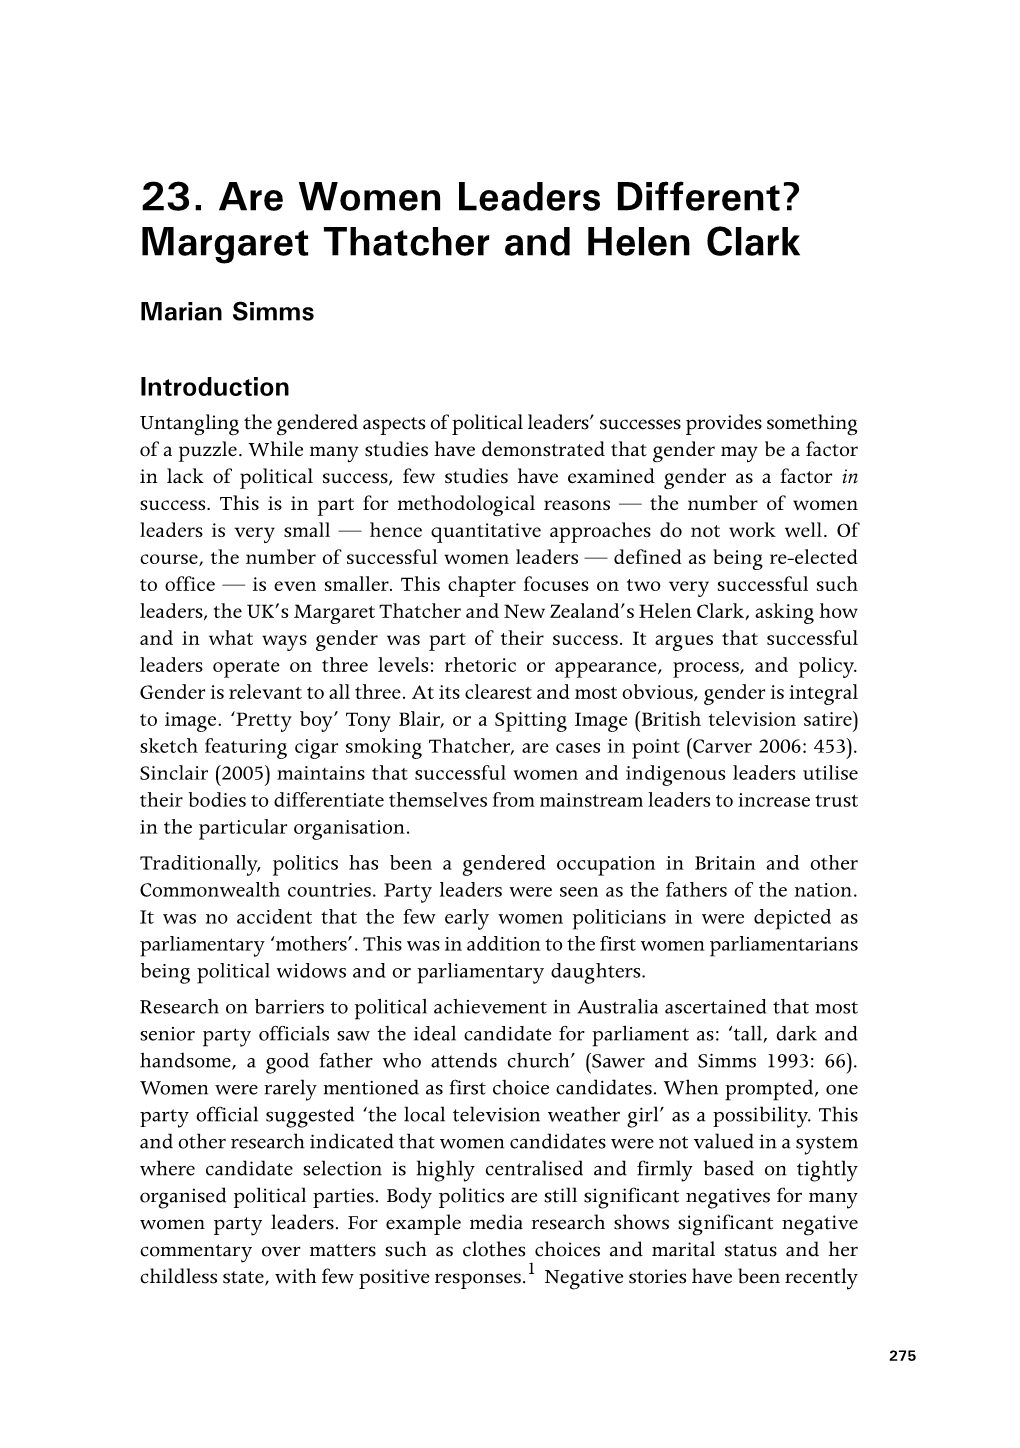 Margaret Thatcher and Helen Clark